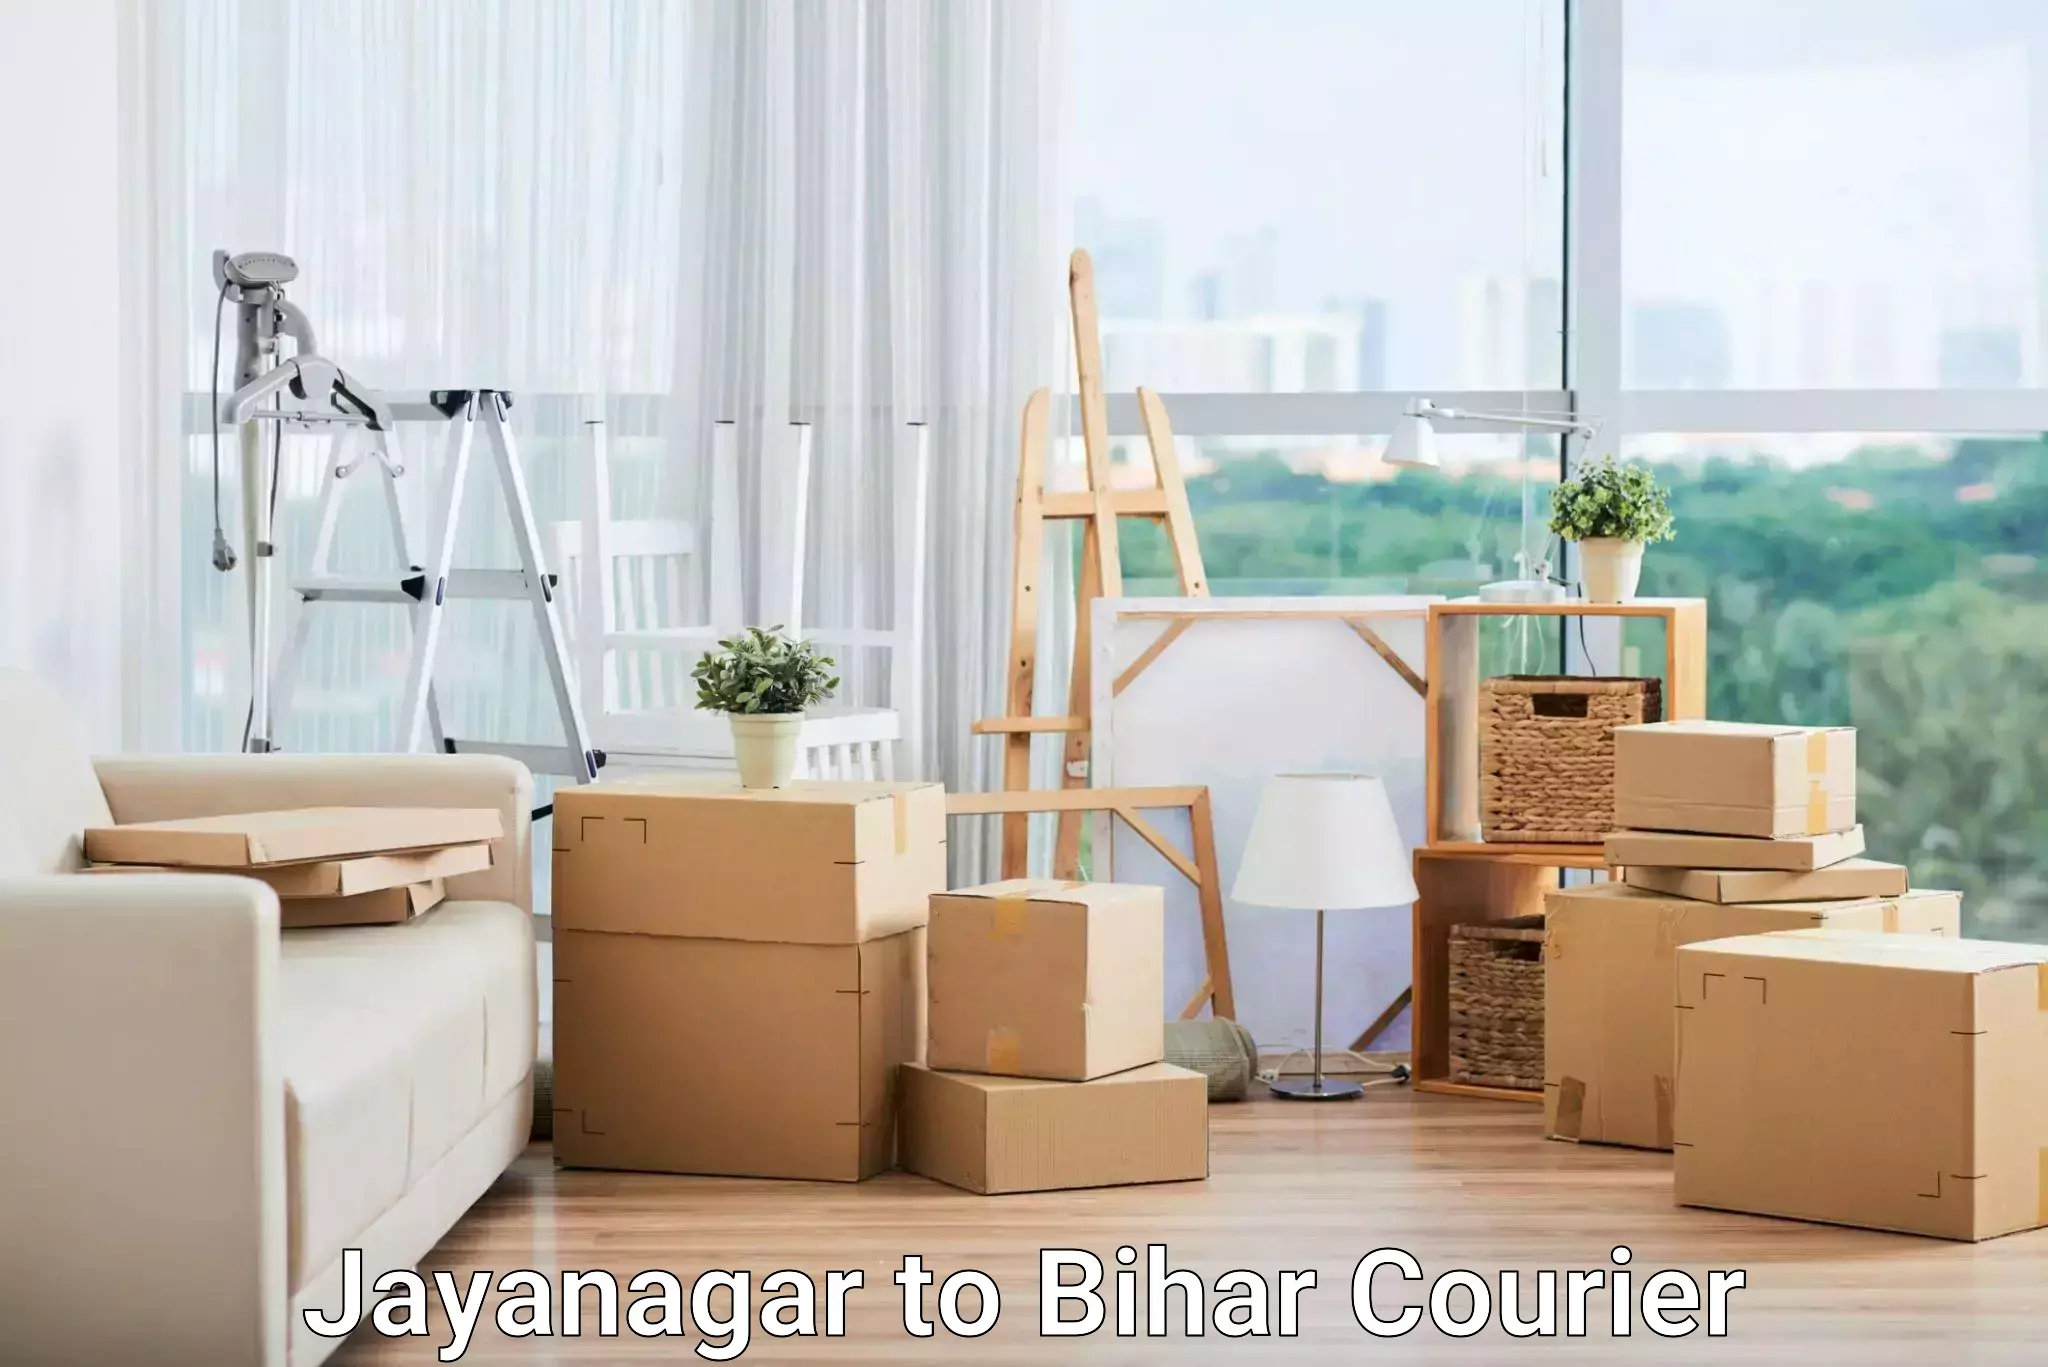 High-speed parcel service Jayanagar to Bihar